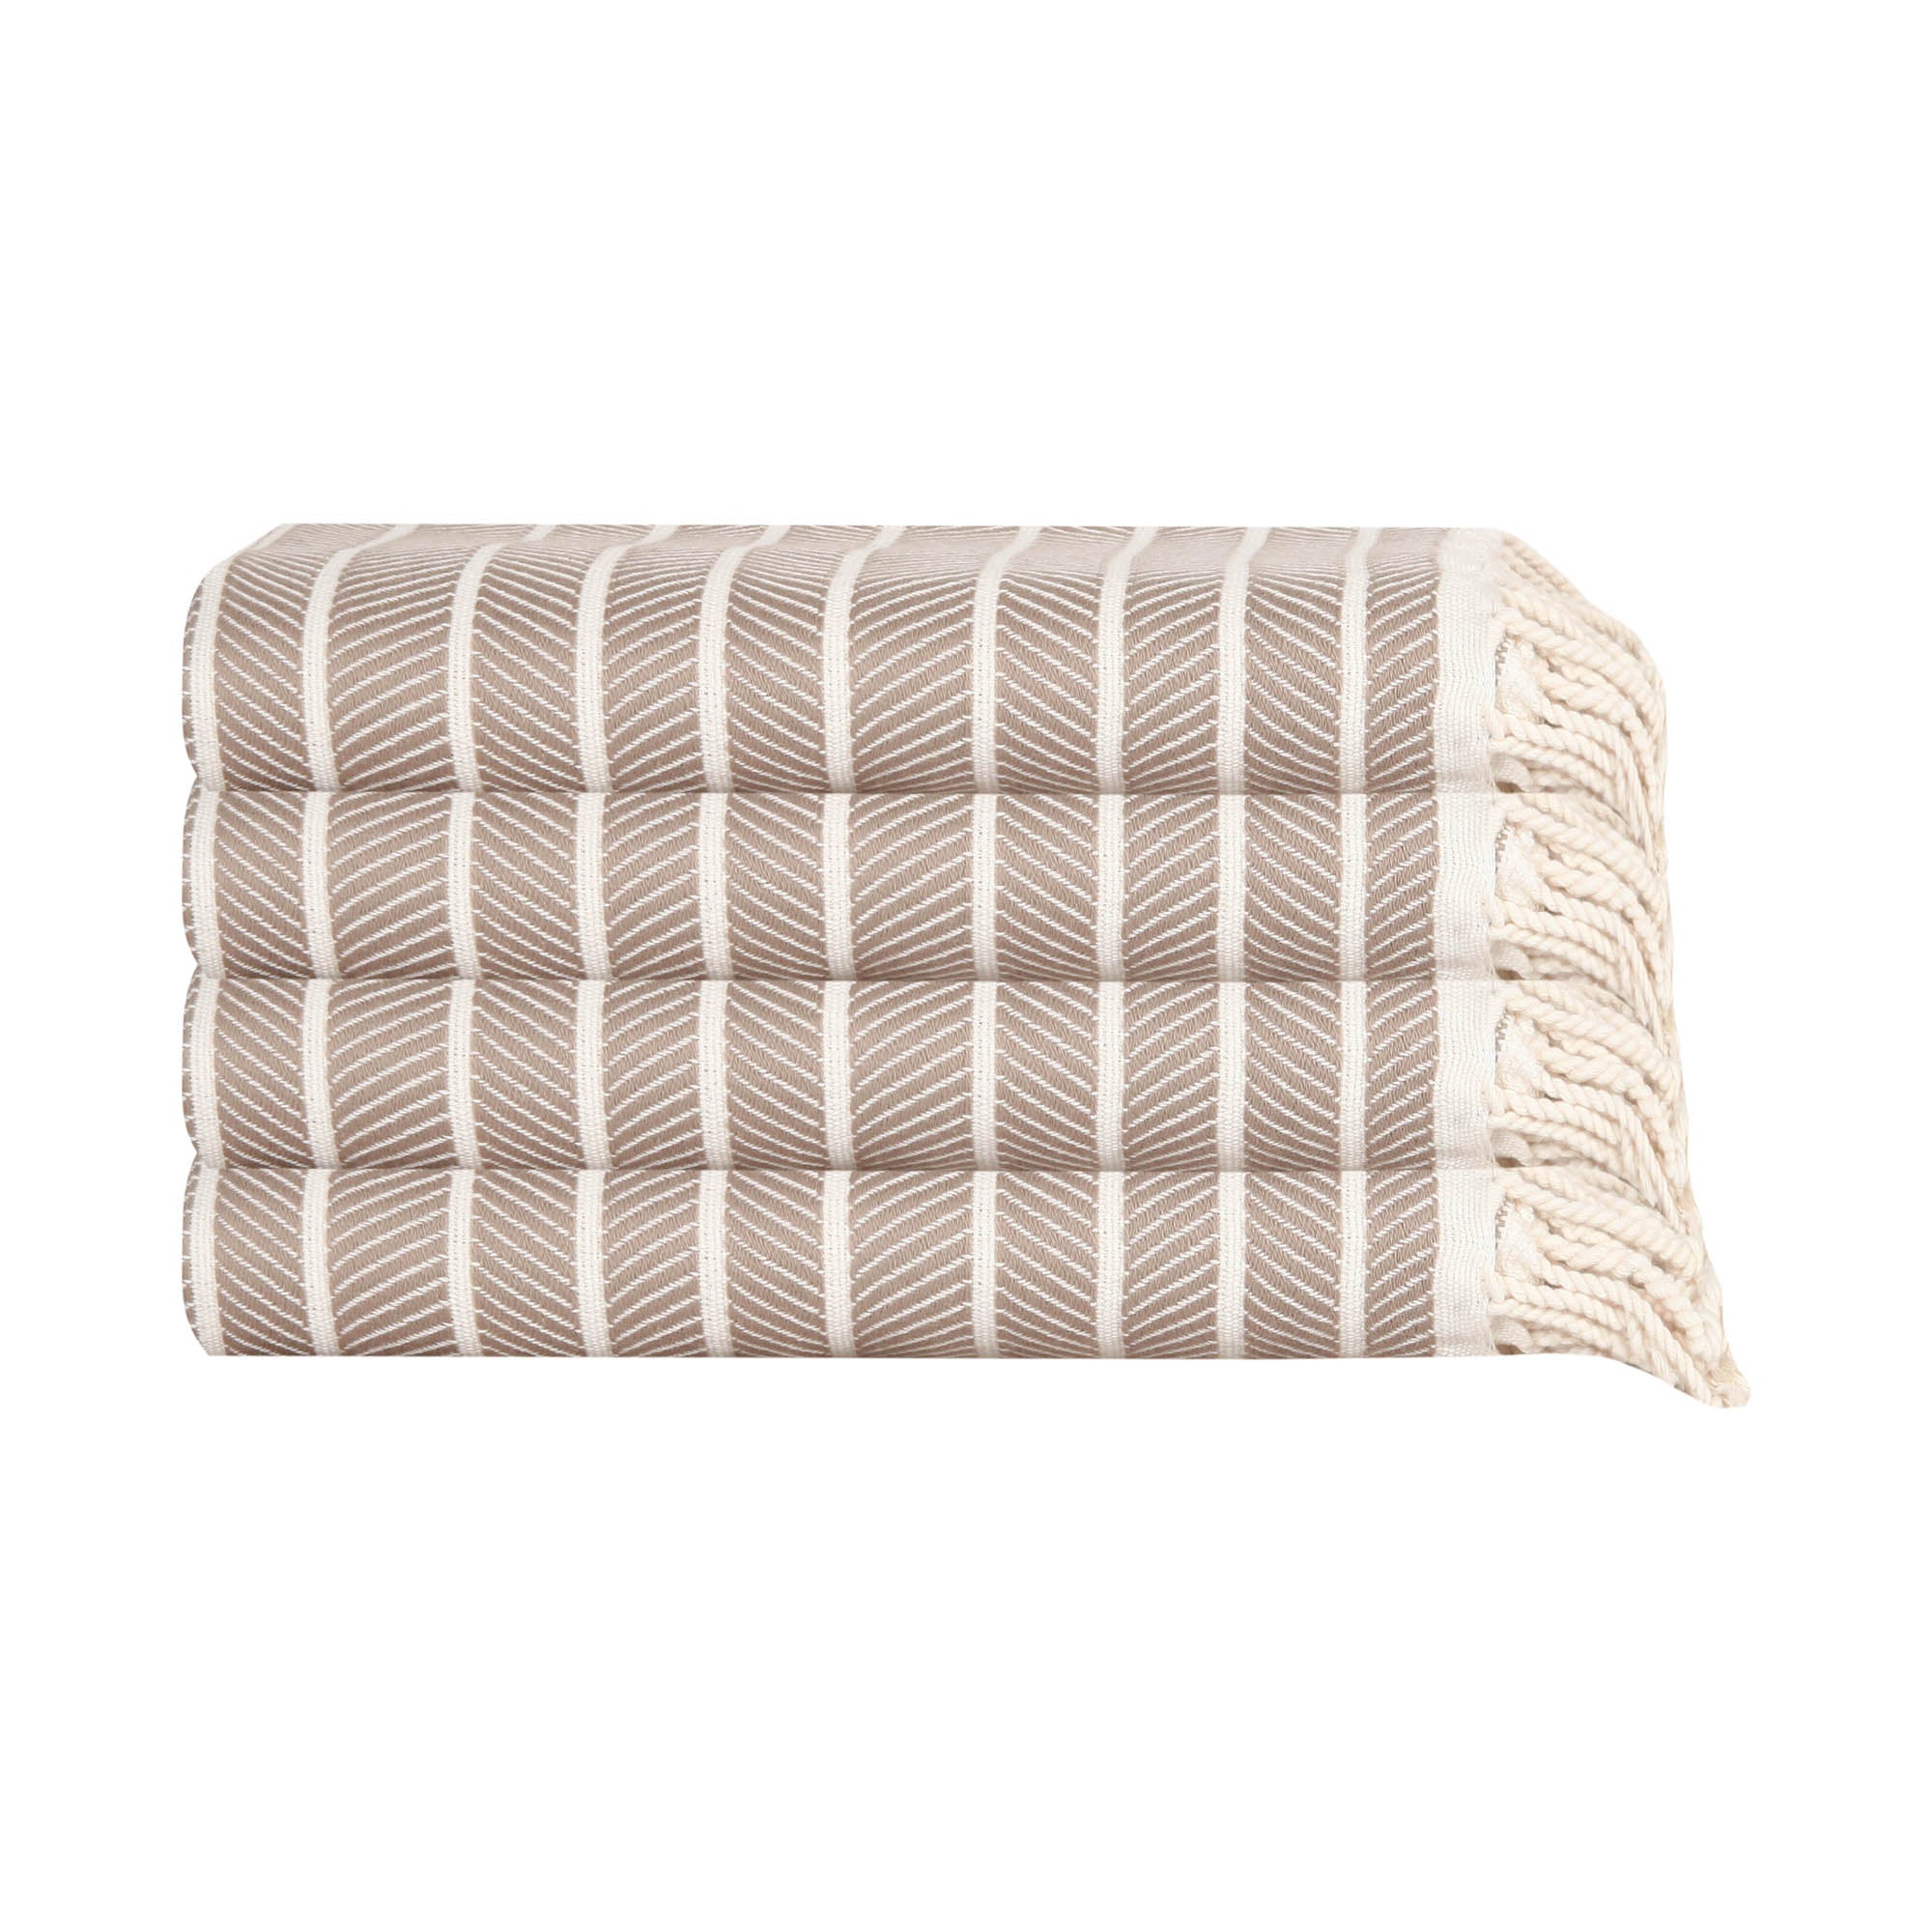 Paquete de toallas de mano/cocina turcas Cloud Soft